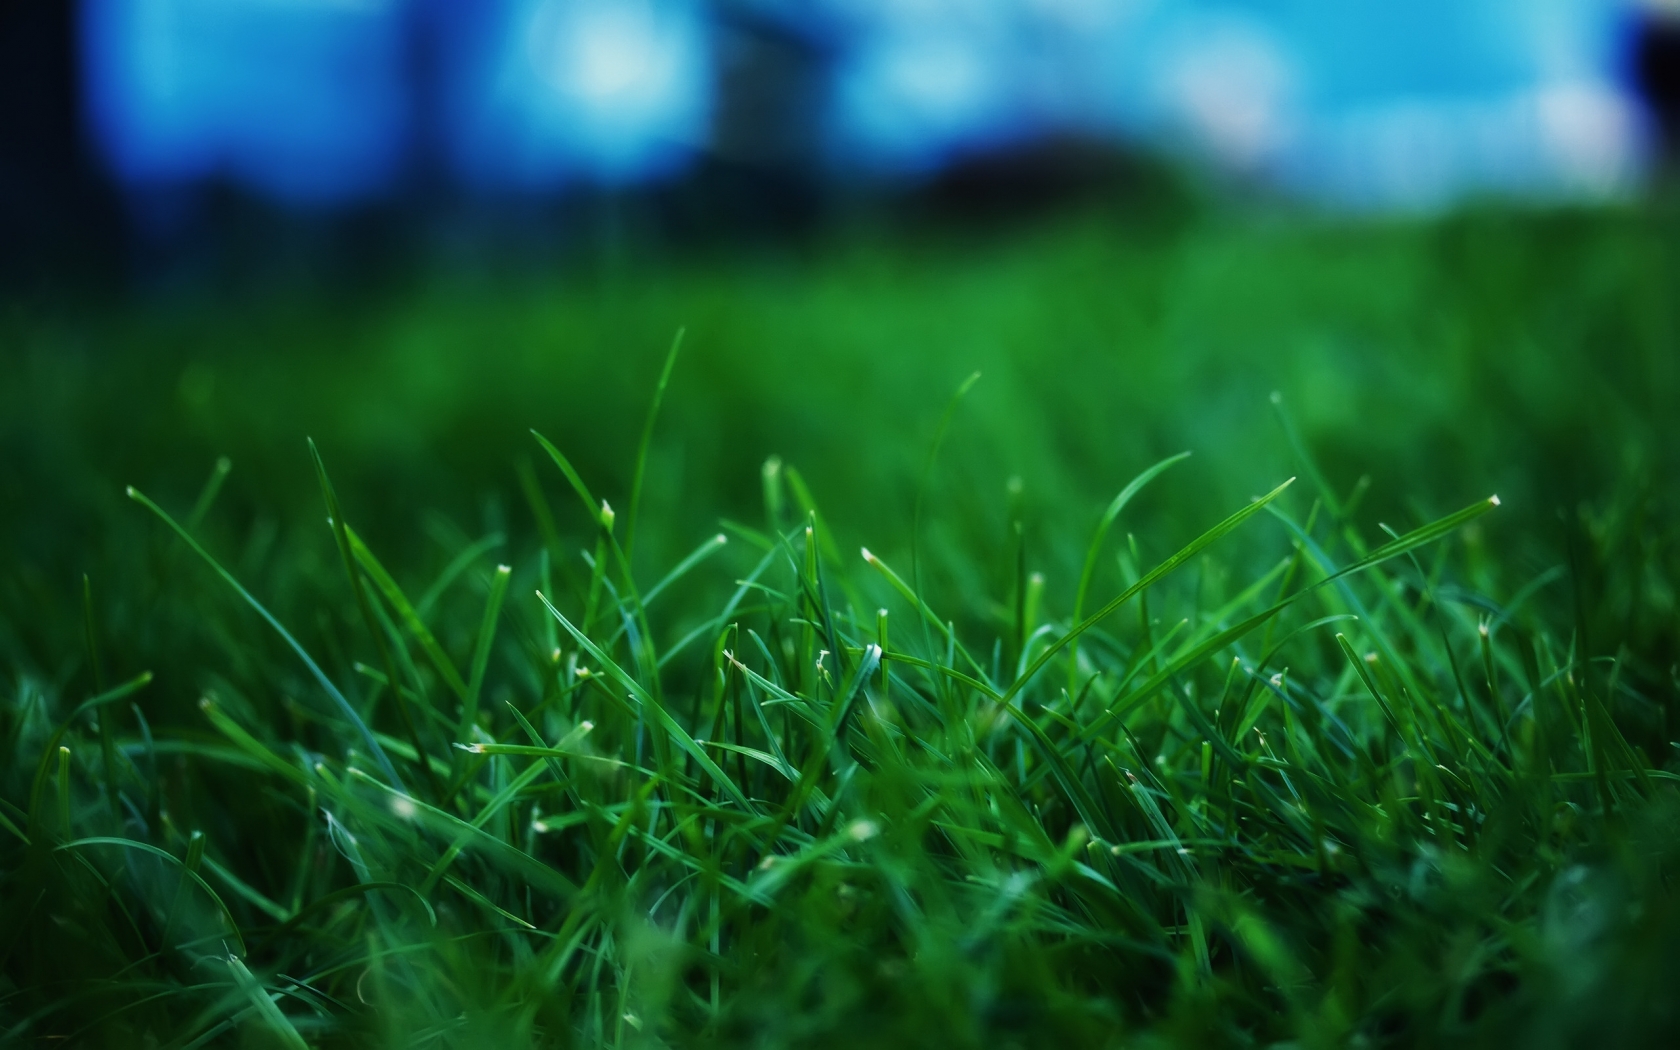 Fresh Grass for 1680 x 1050 widescreen resolution